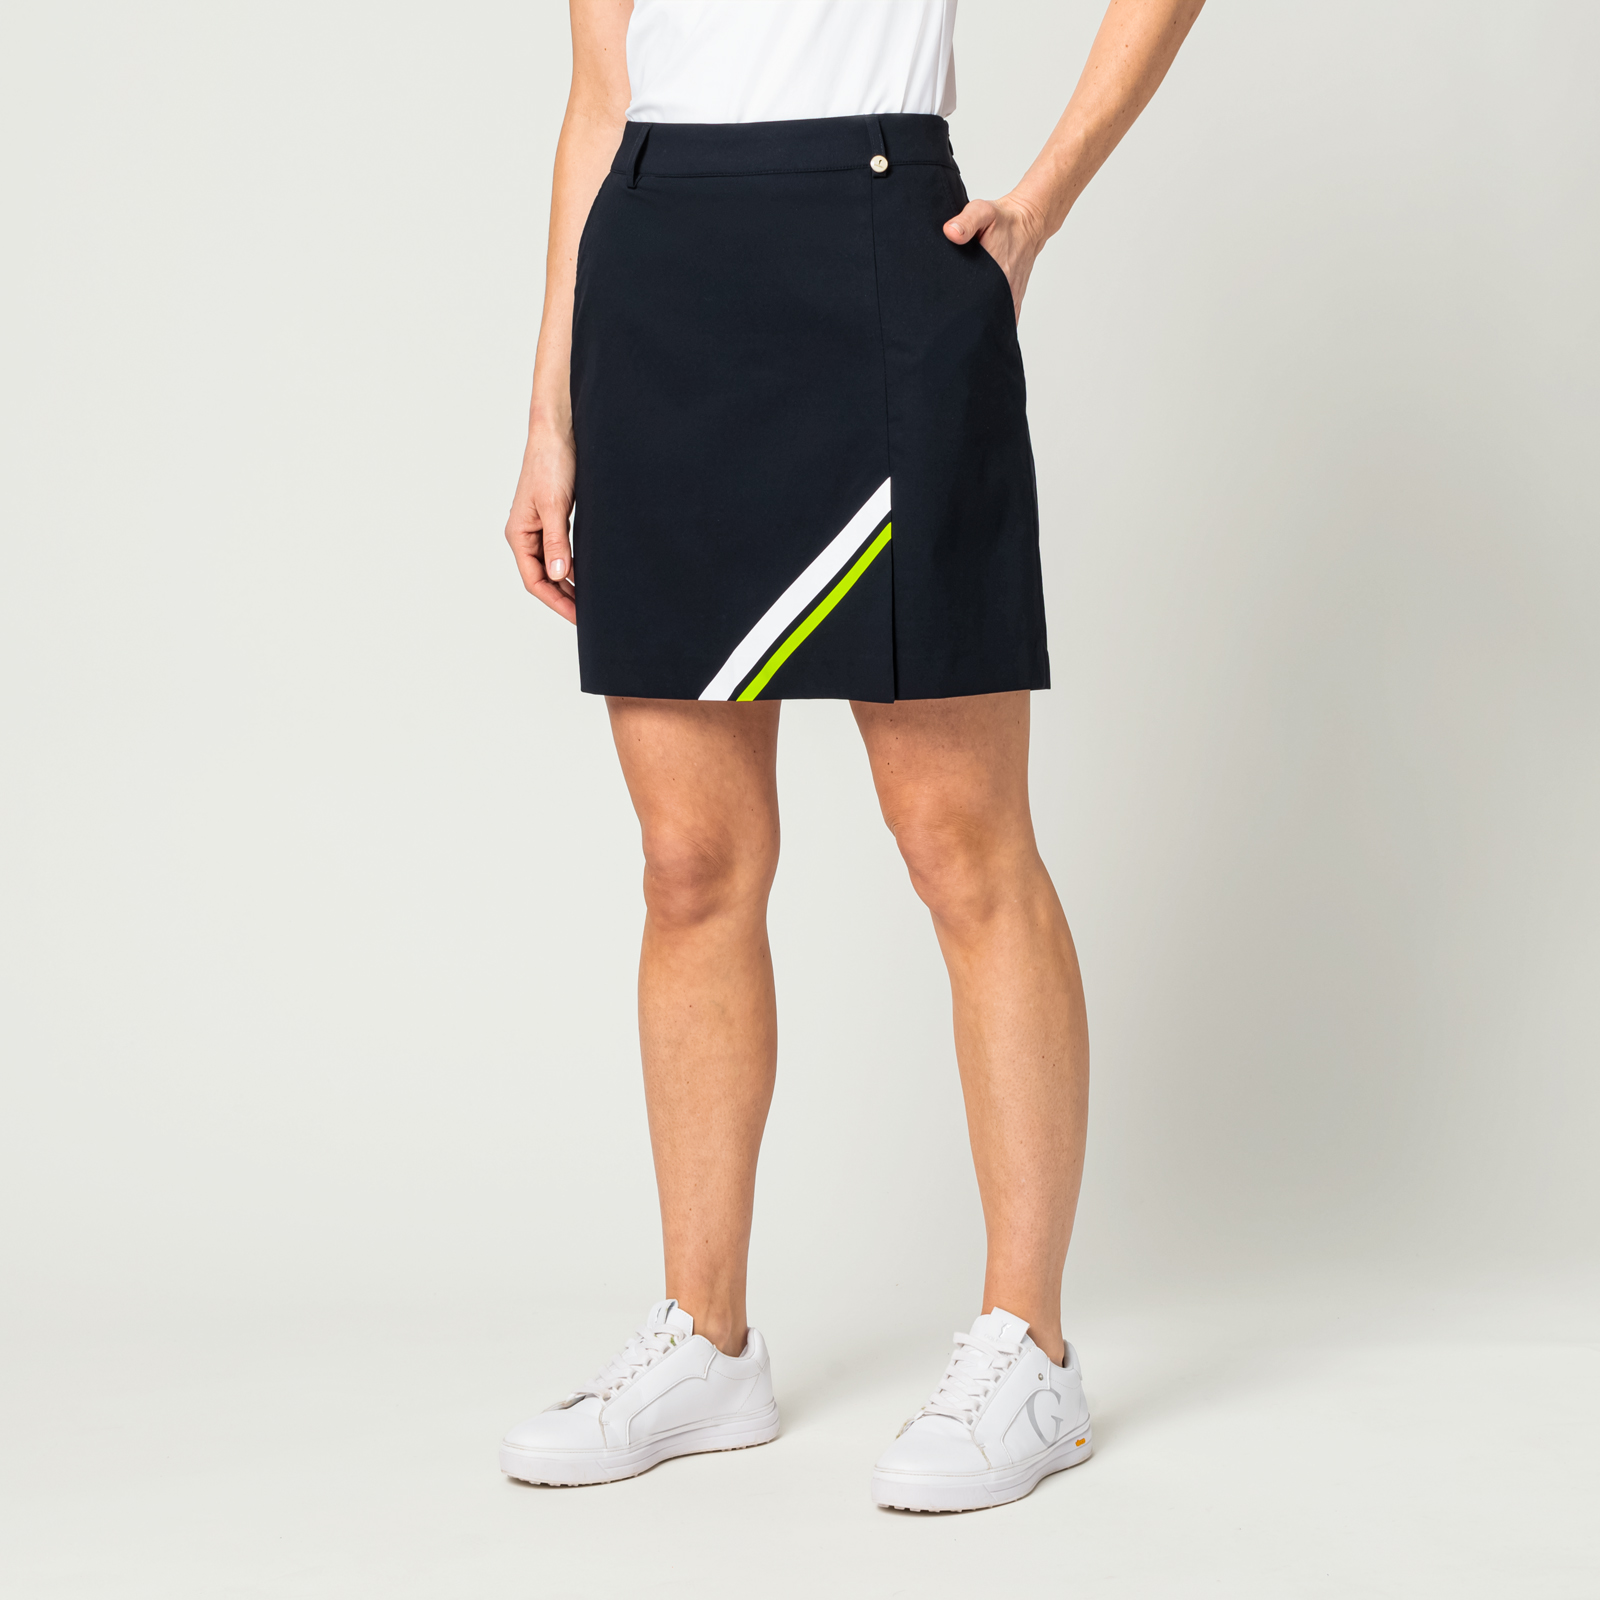 Jupe-short de golf élastique anti-UV pour femmes